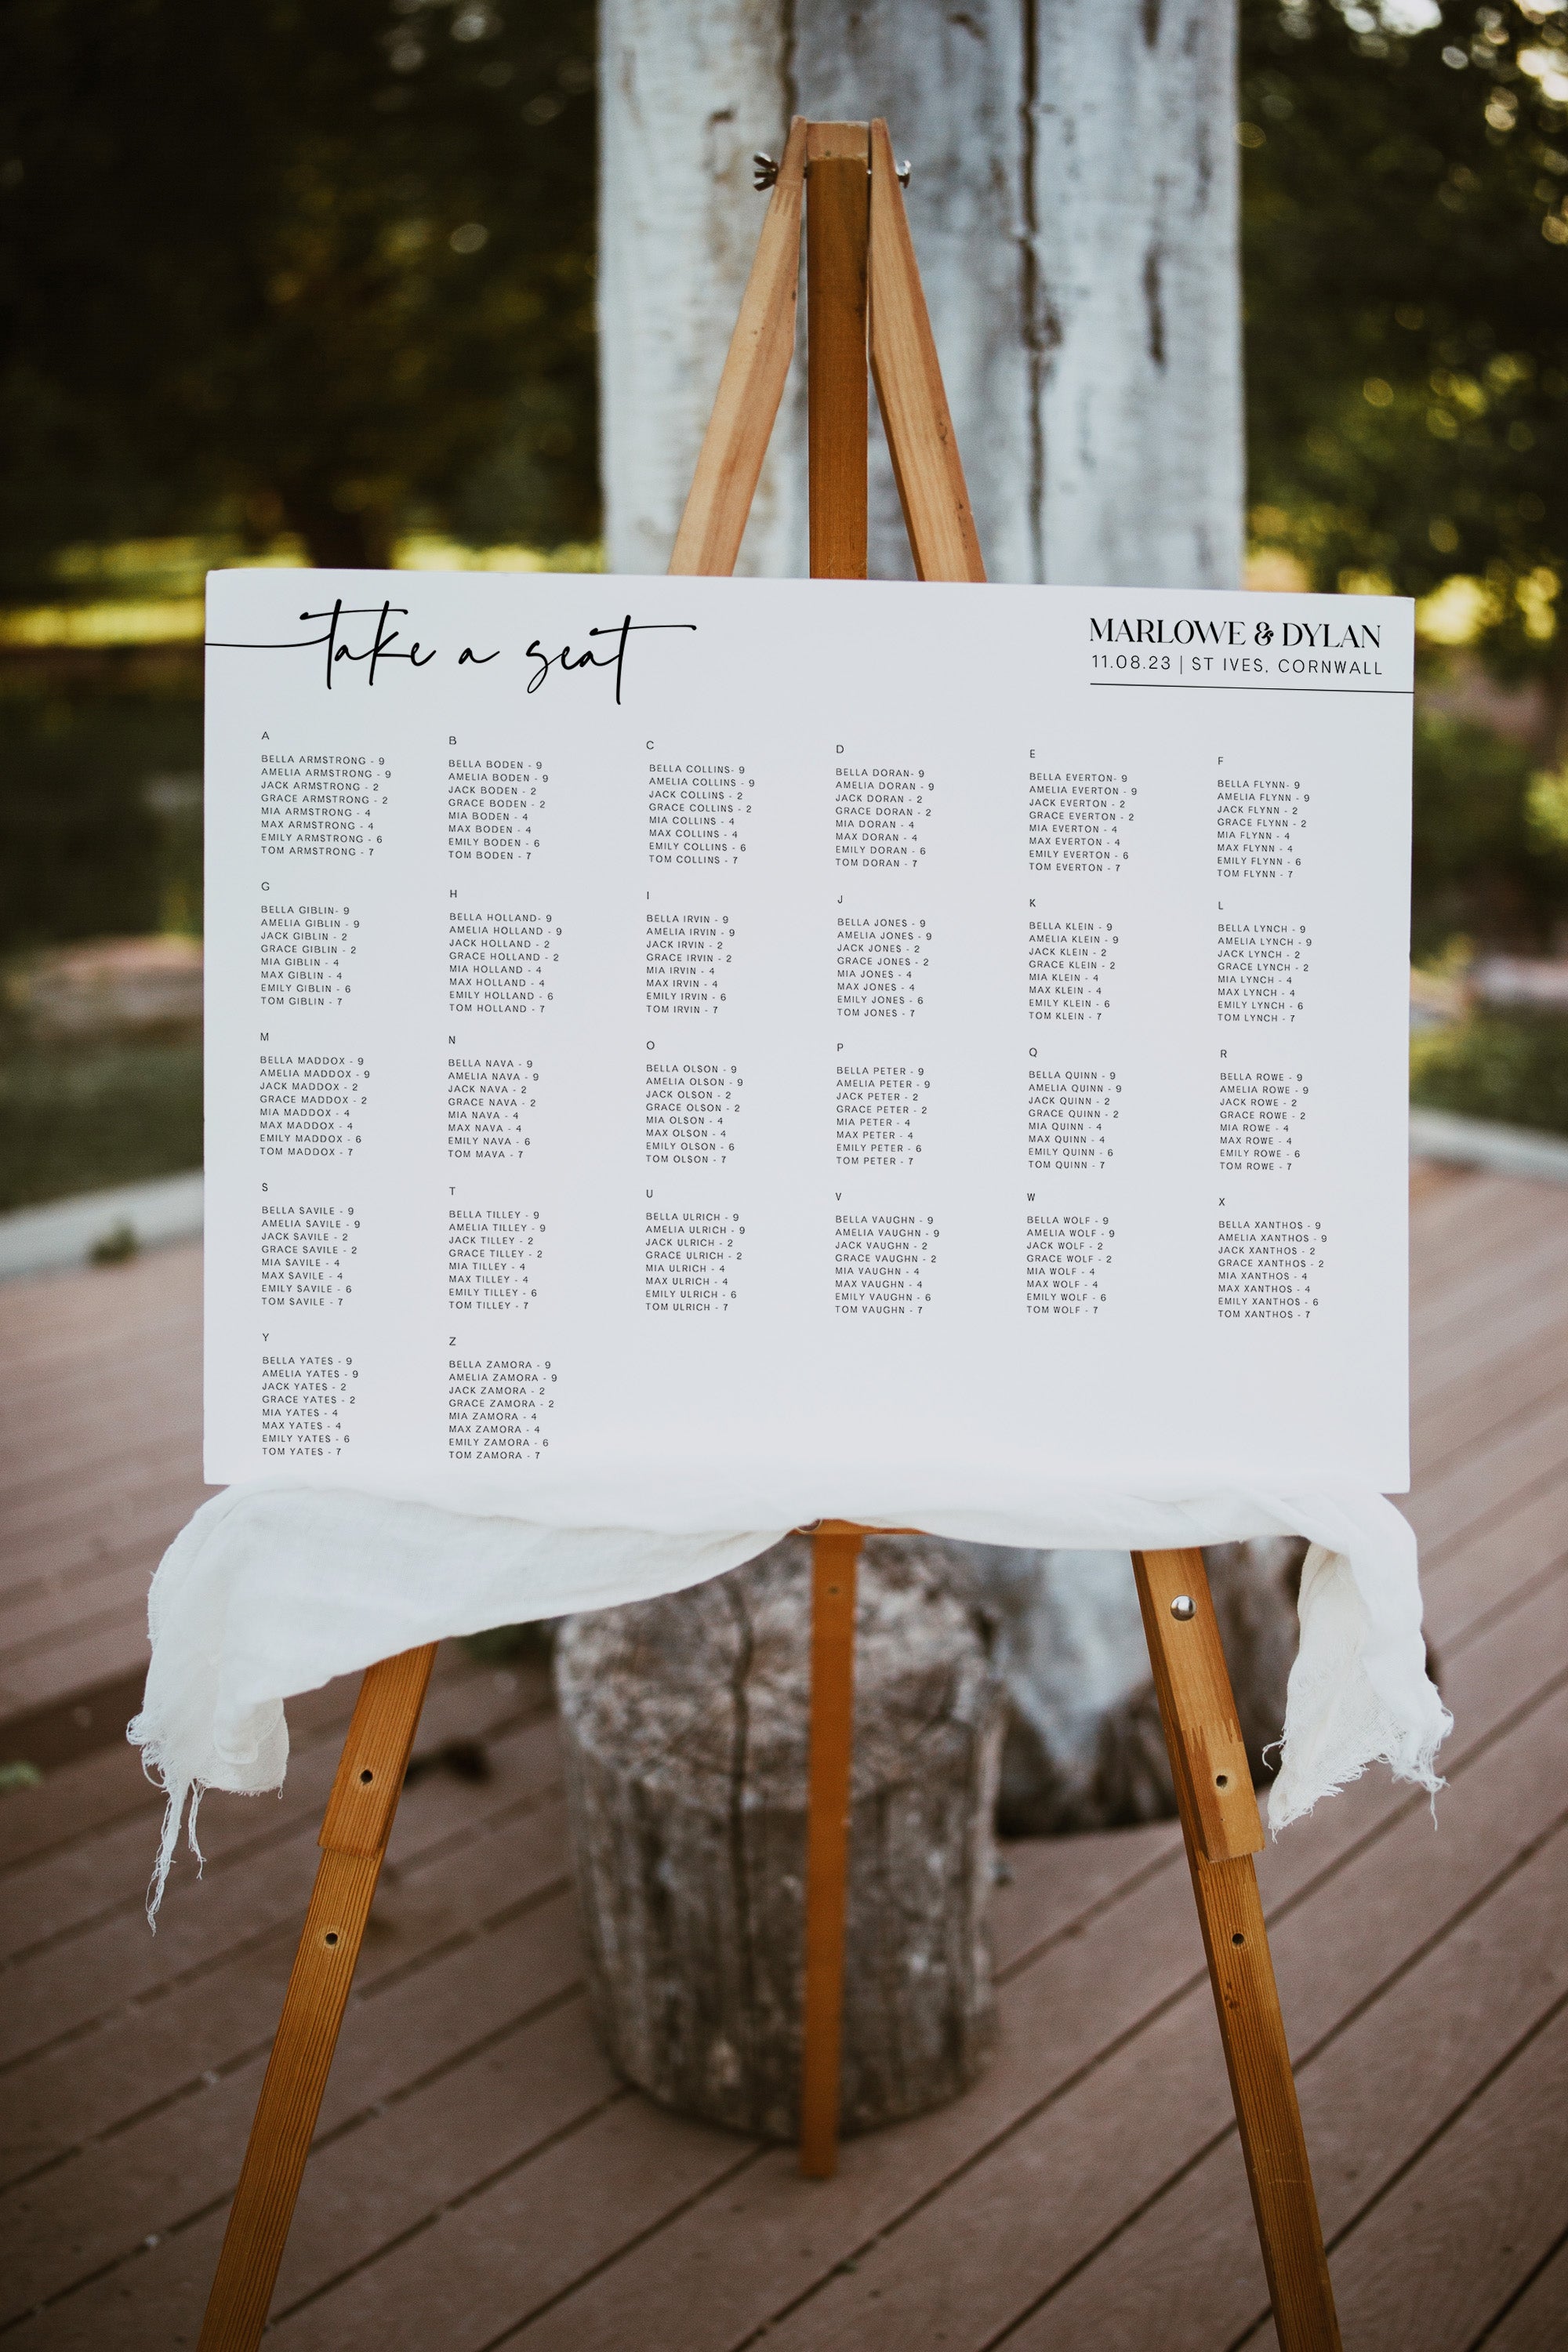 editable wedding seating plan, wedding seating chart, printable wedding seating chart, wedding table plans